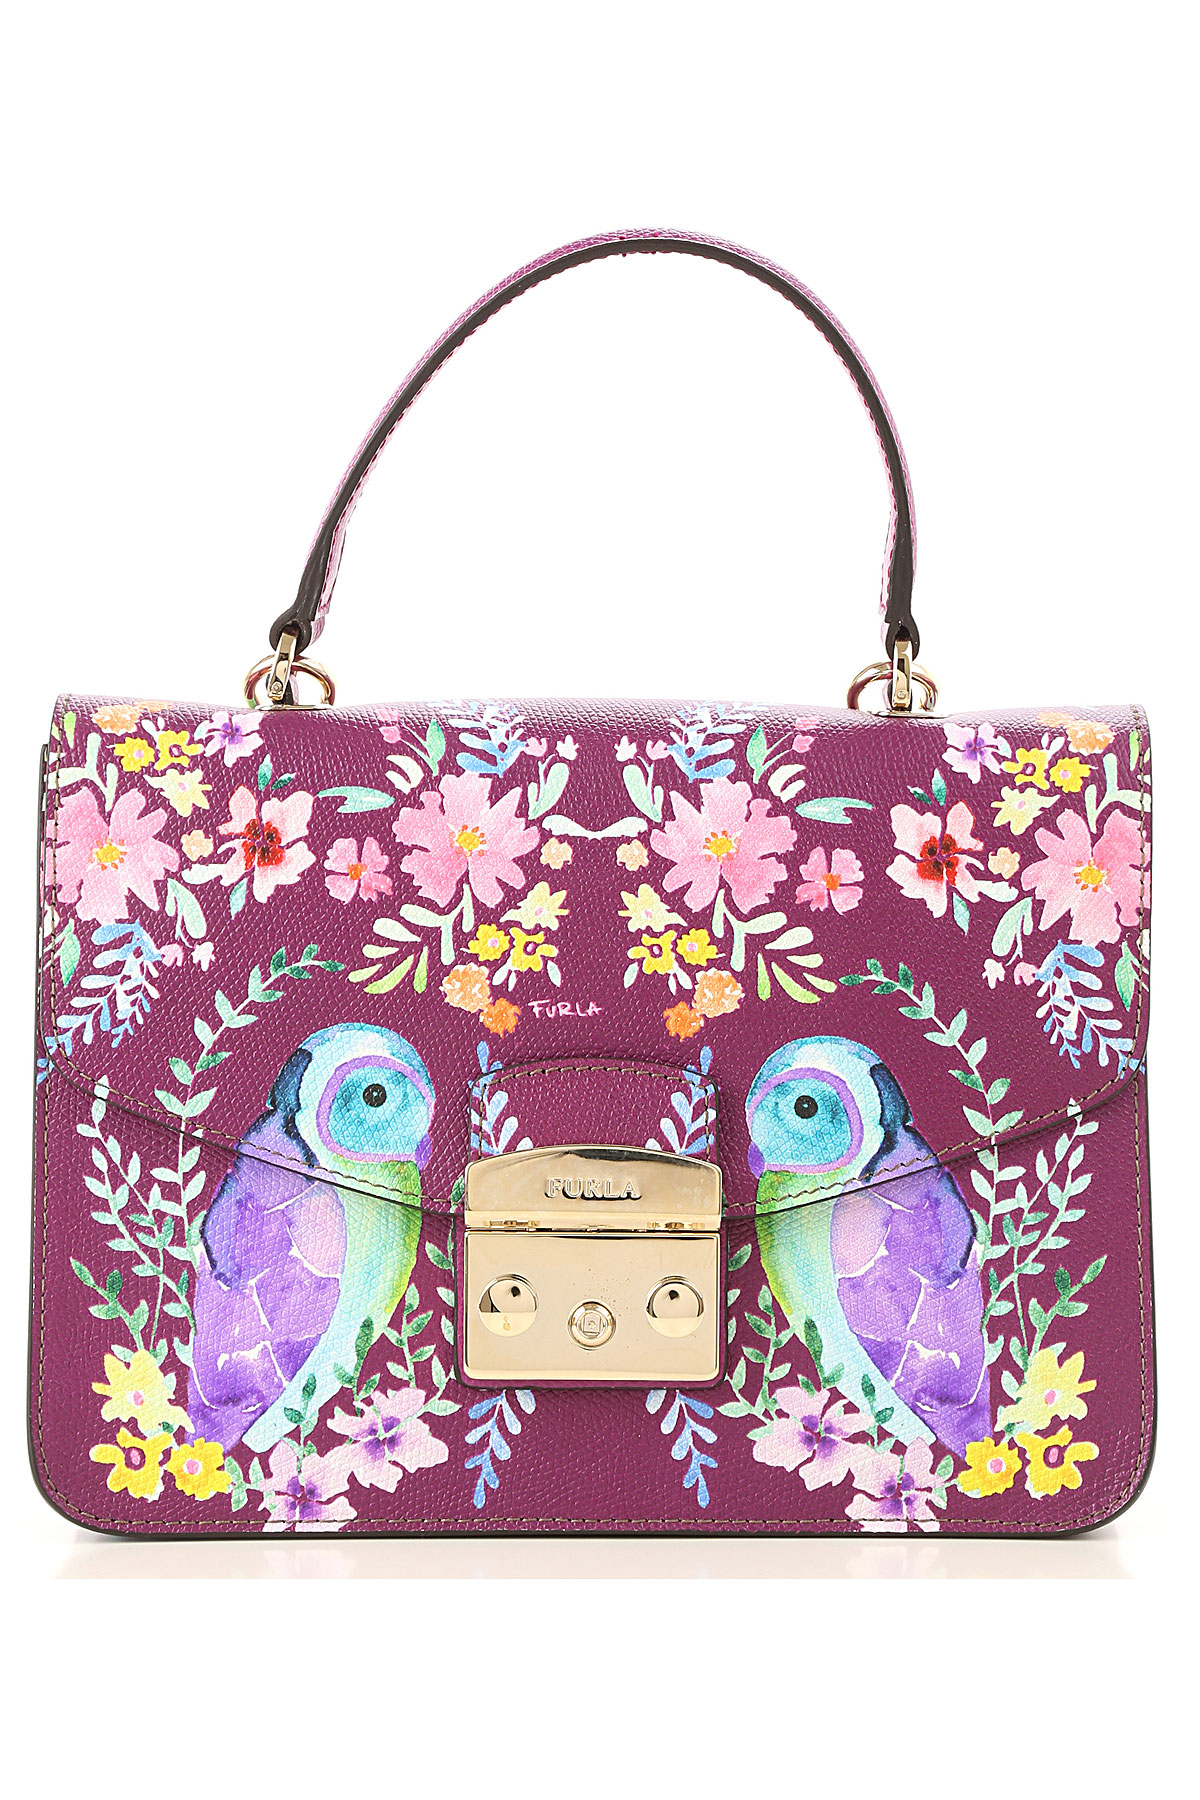 Handbags Furla, Style code: 962595-h93-bouganville